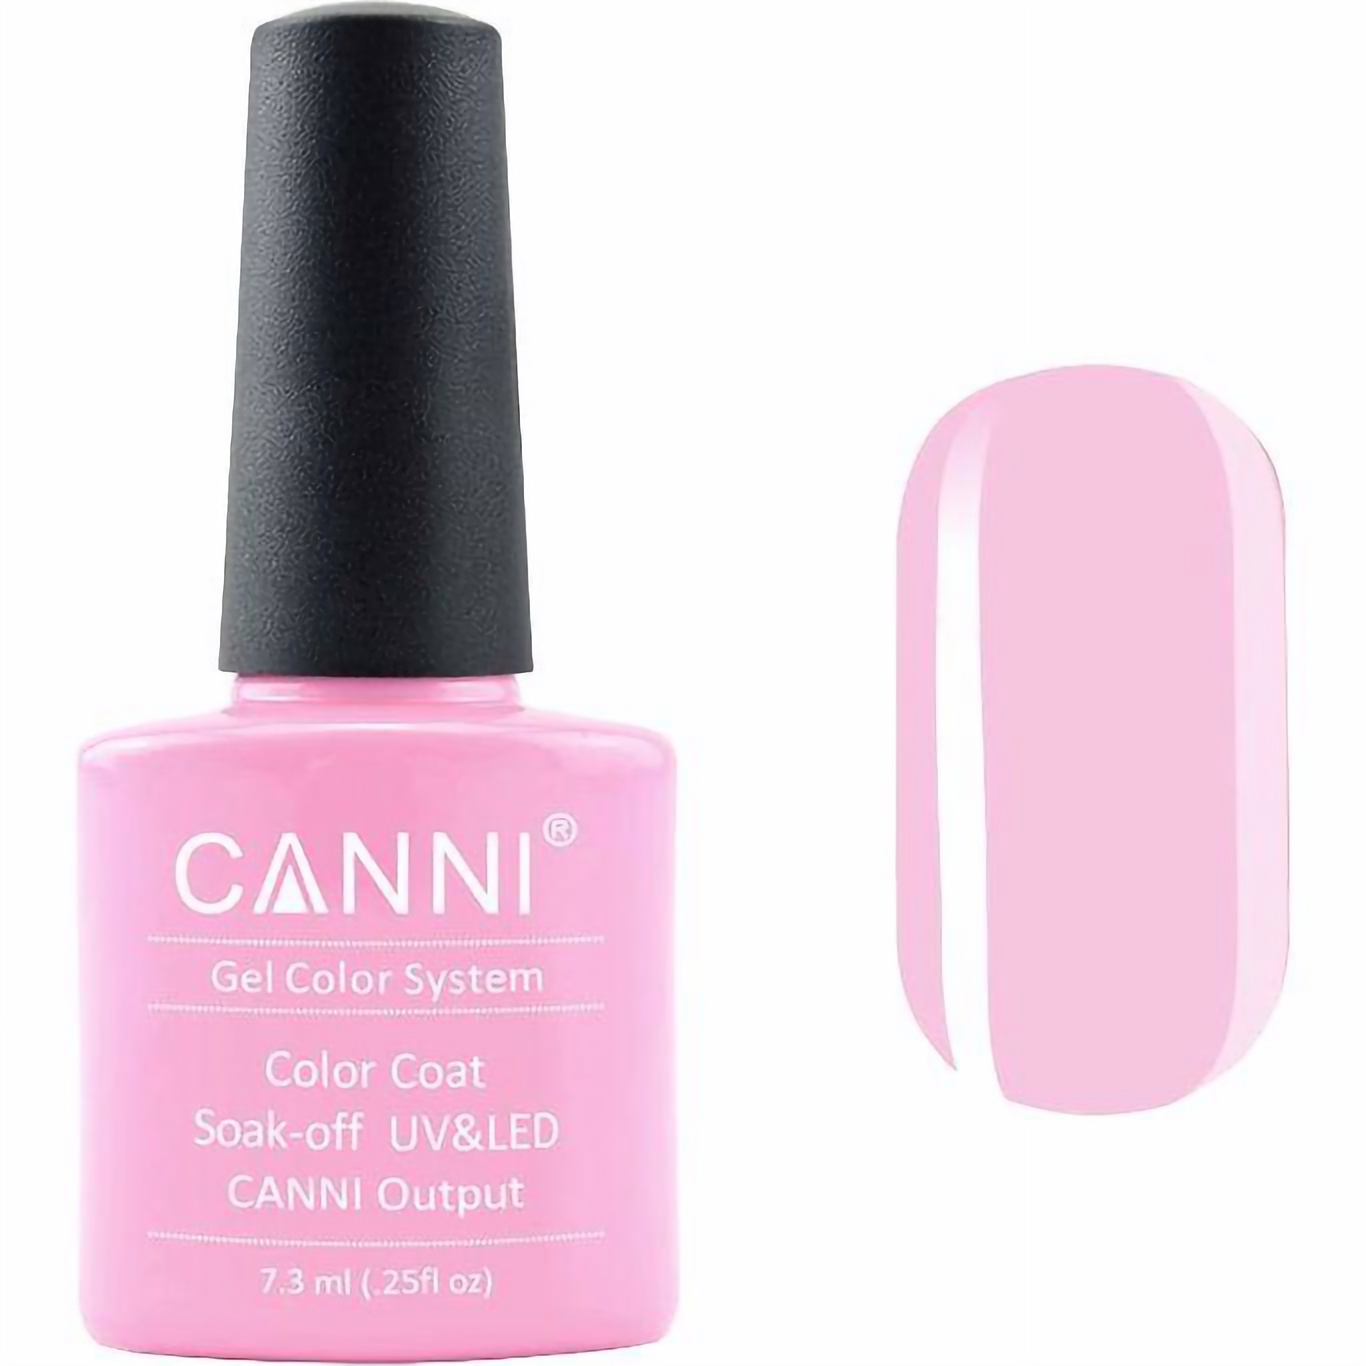 Гель-лак Canni Color Coat Soak-off UV&LED 73 насыщенный светло-розовый 7.3 мл - фото 1